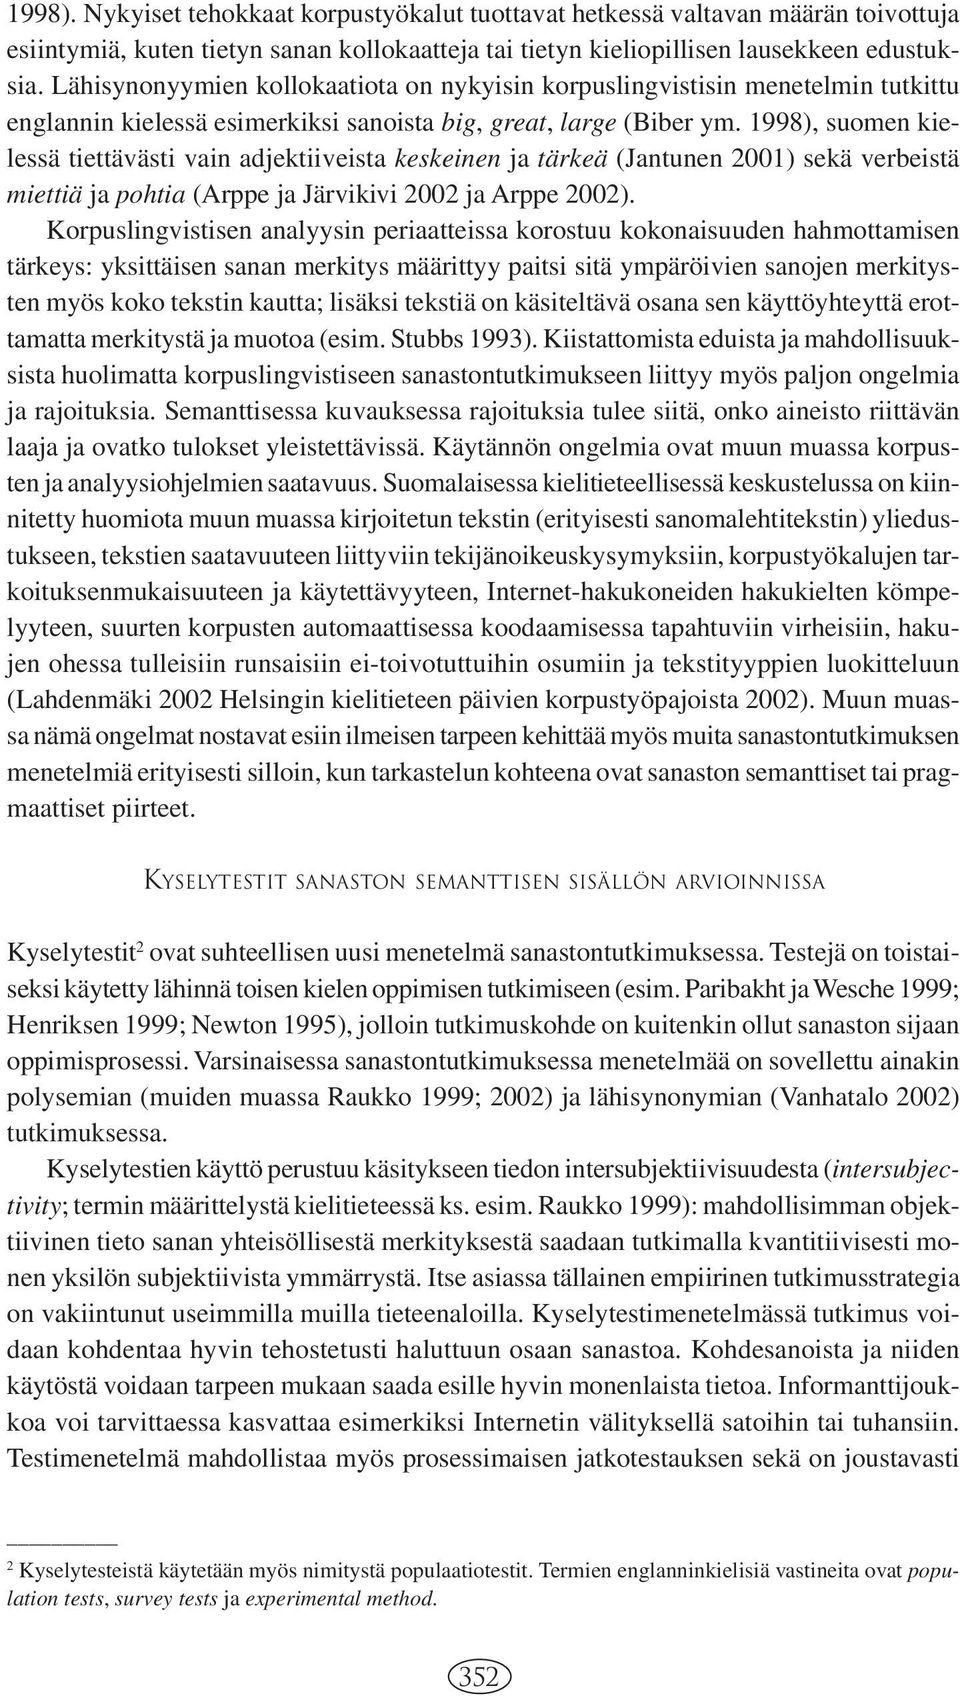 1998), suomen kielessä tiettävästi vain adjektiiveista keskeinen ja tärkeä (Jantunen 2001) sekä verbeistä miettiä ja pohtia (Arppe ja Järvikivi 2002 ja Arppe 2002).